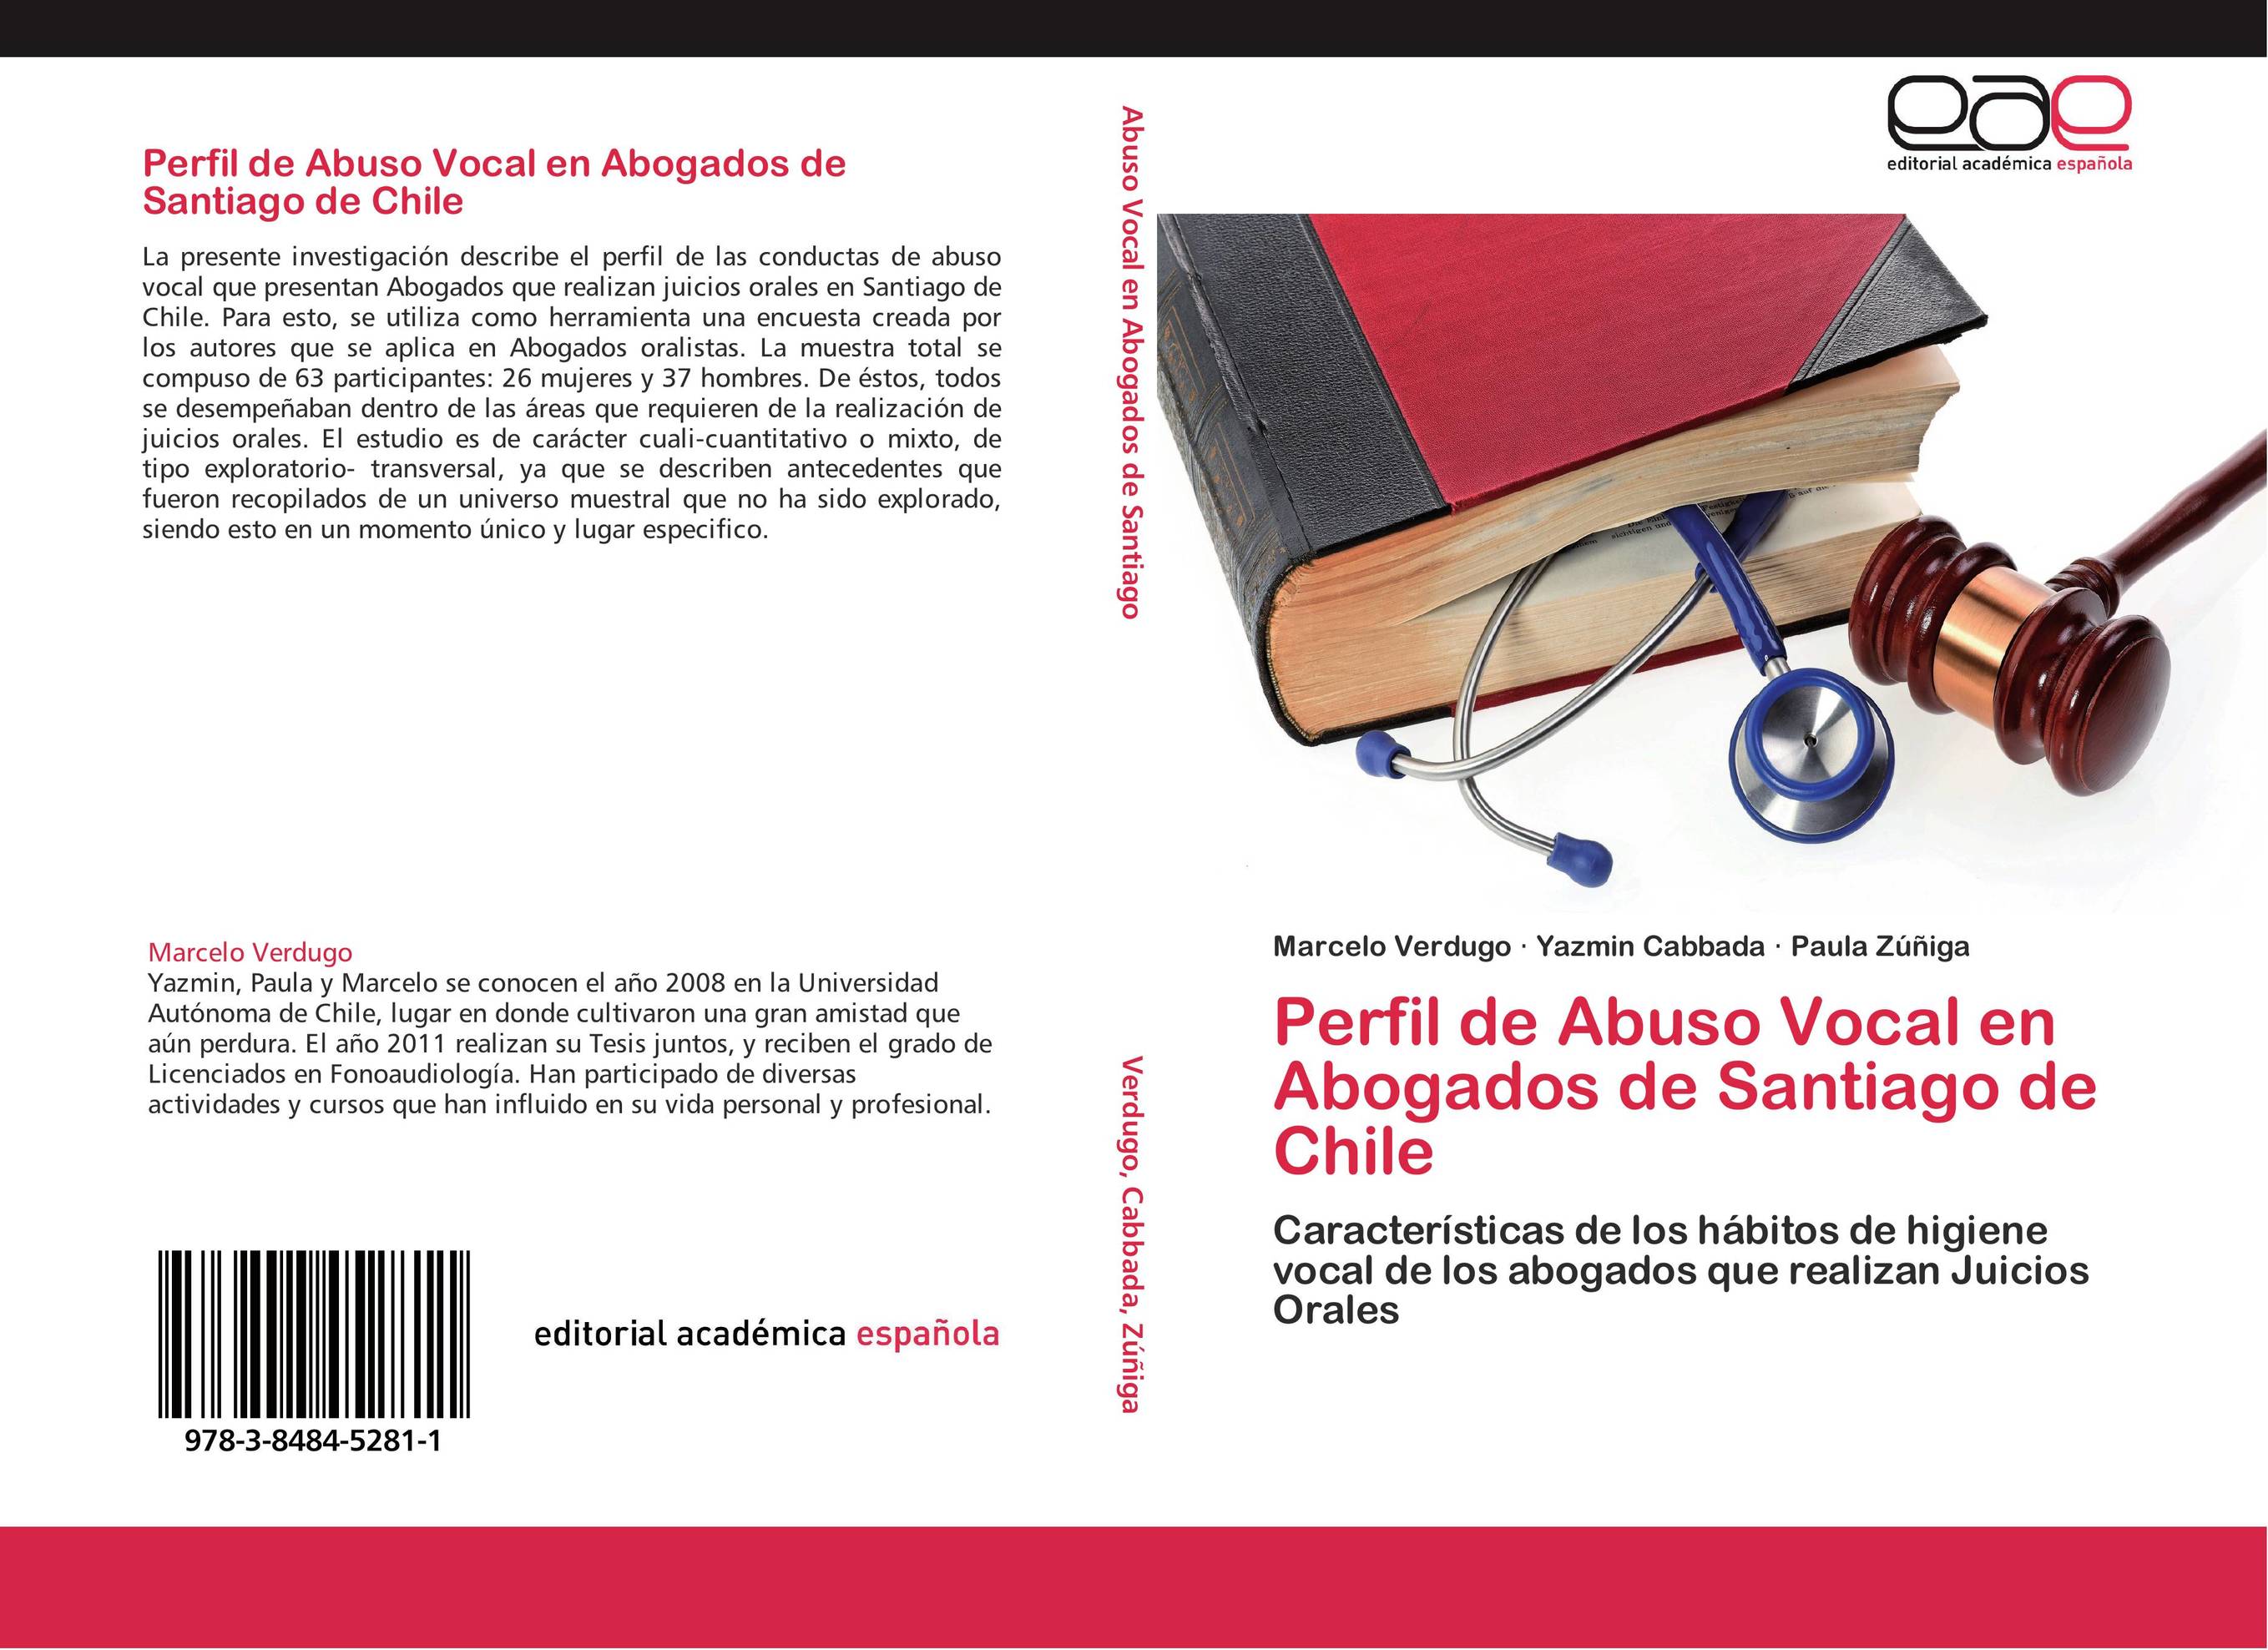 Perfil de Abuso Vocal en Abogados de Santiago de Chile